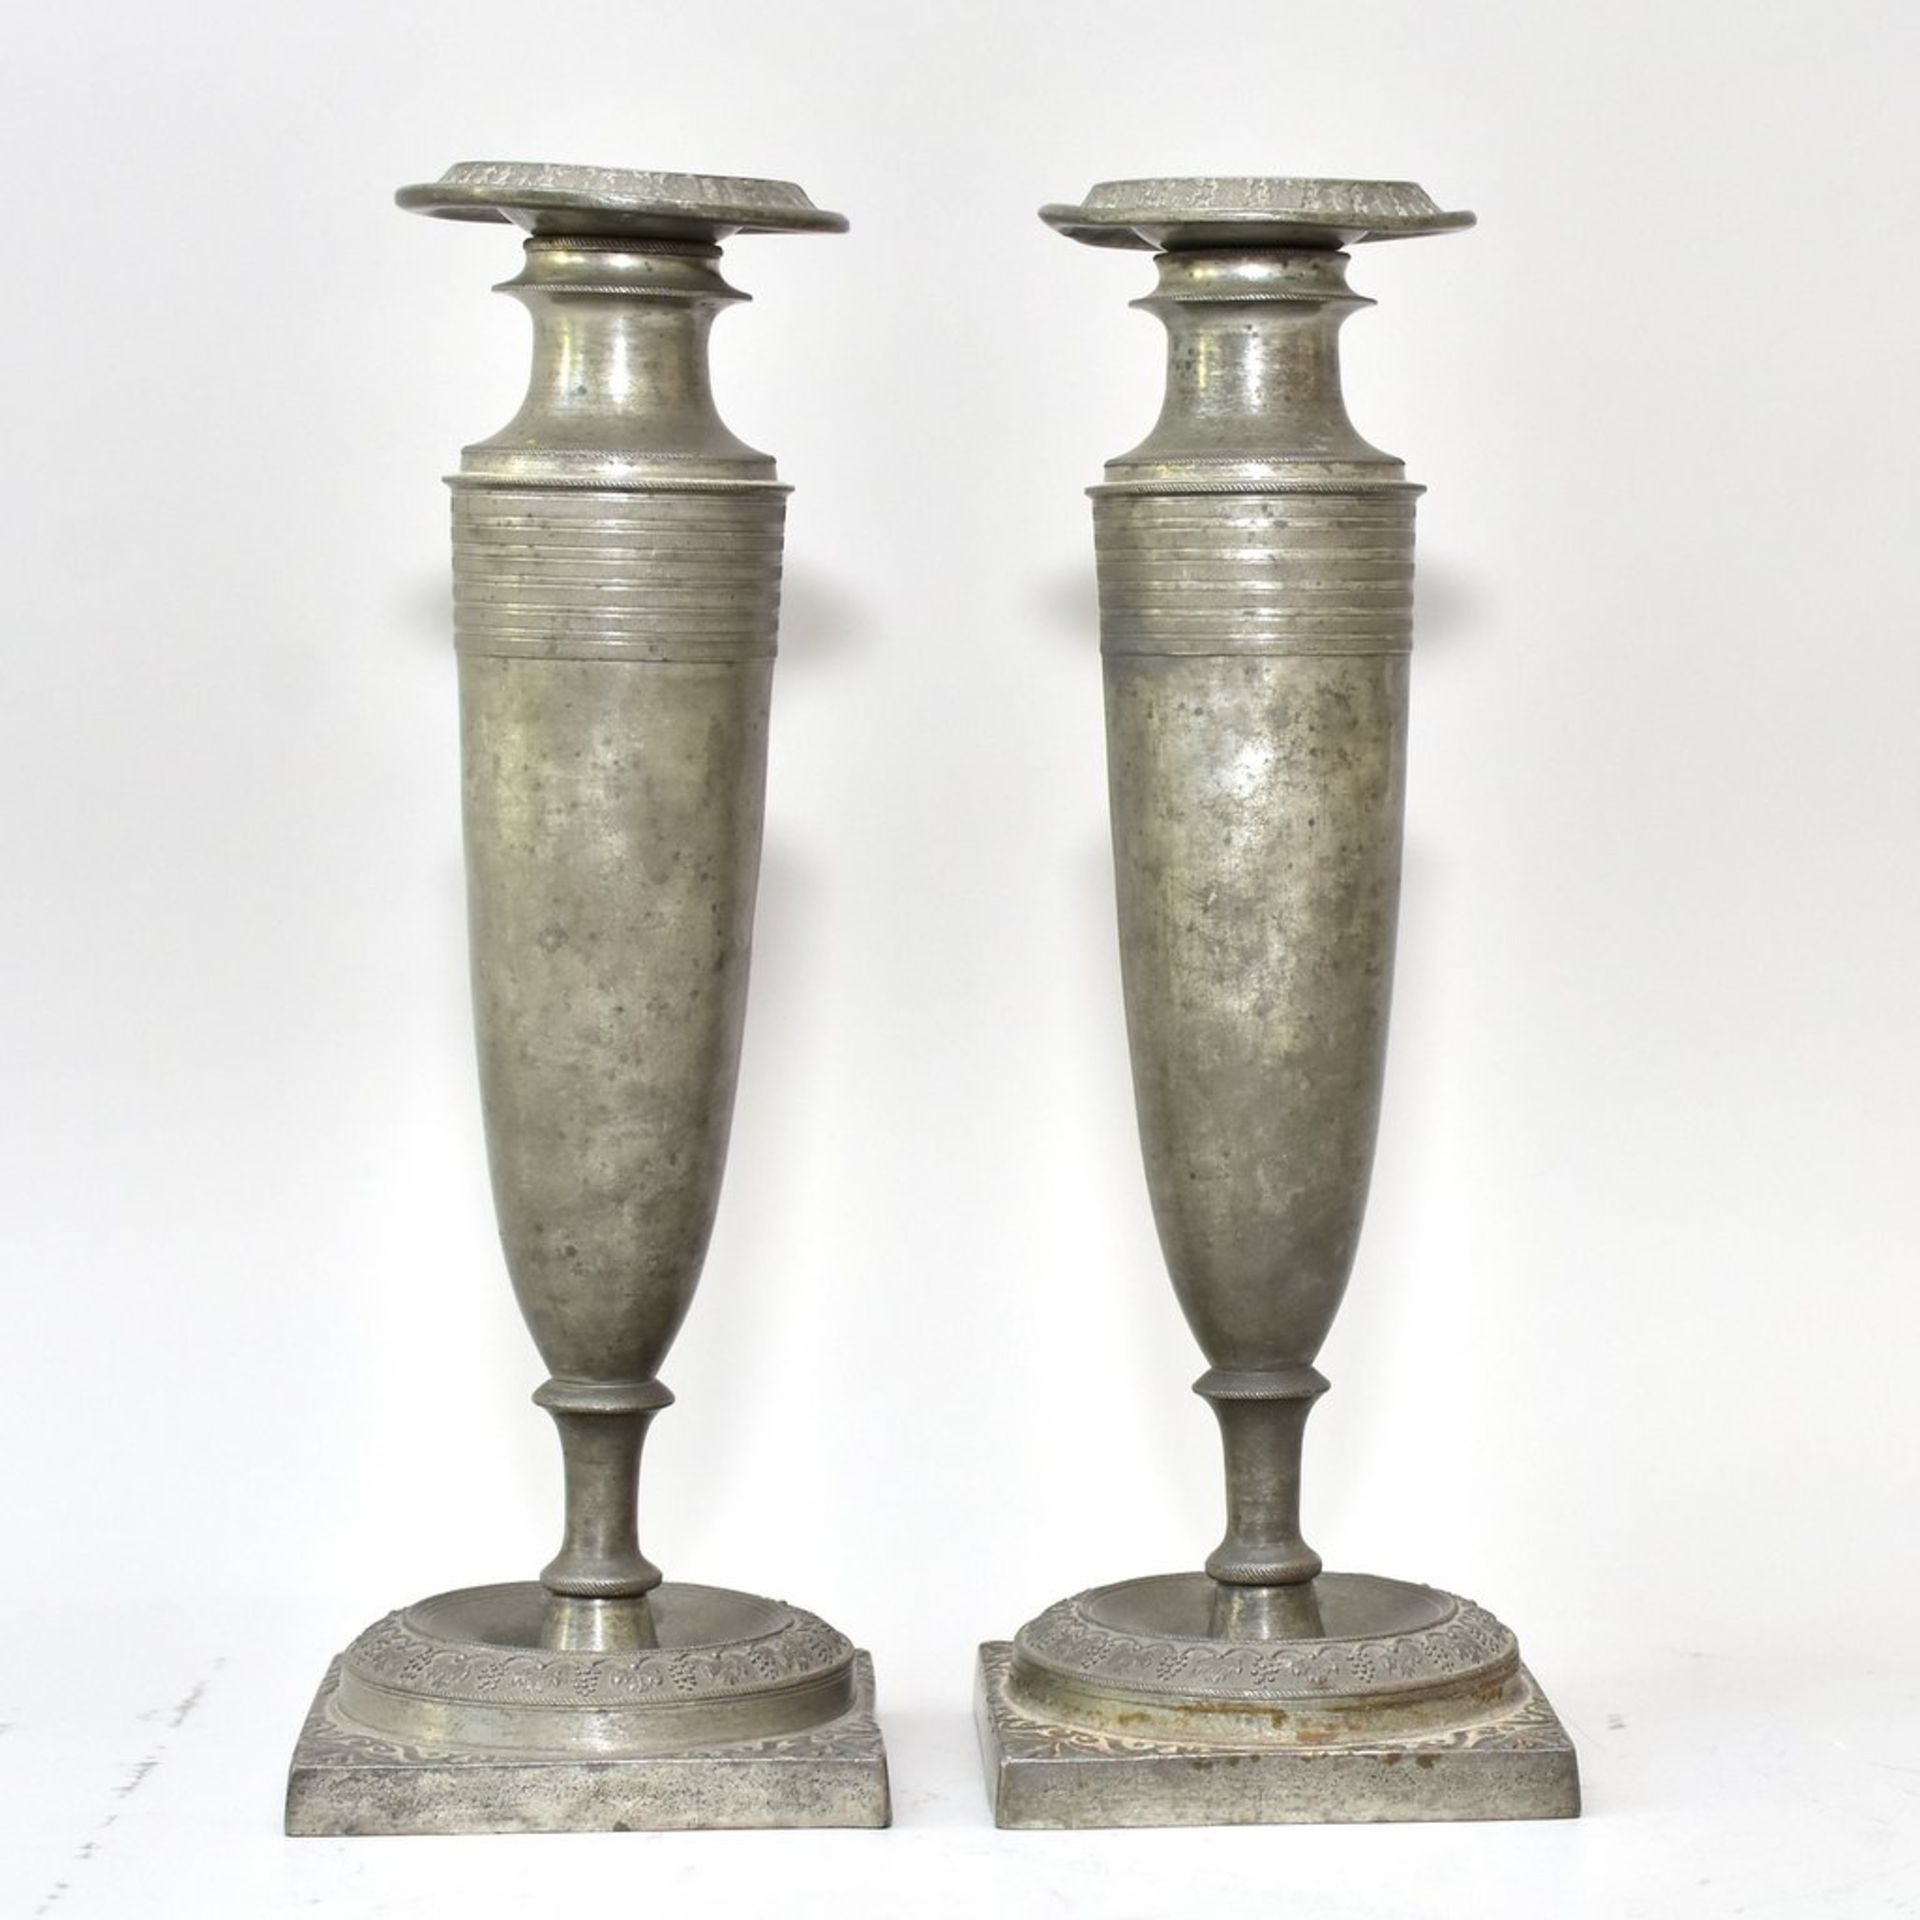 Paar Empire-Zinn-Leuchter für je eine Kerze, um 1800, abnehmbare Kerzenhalter mit leichten